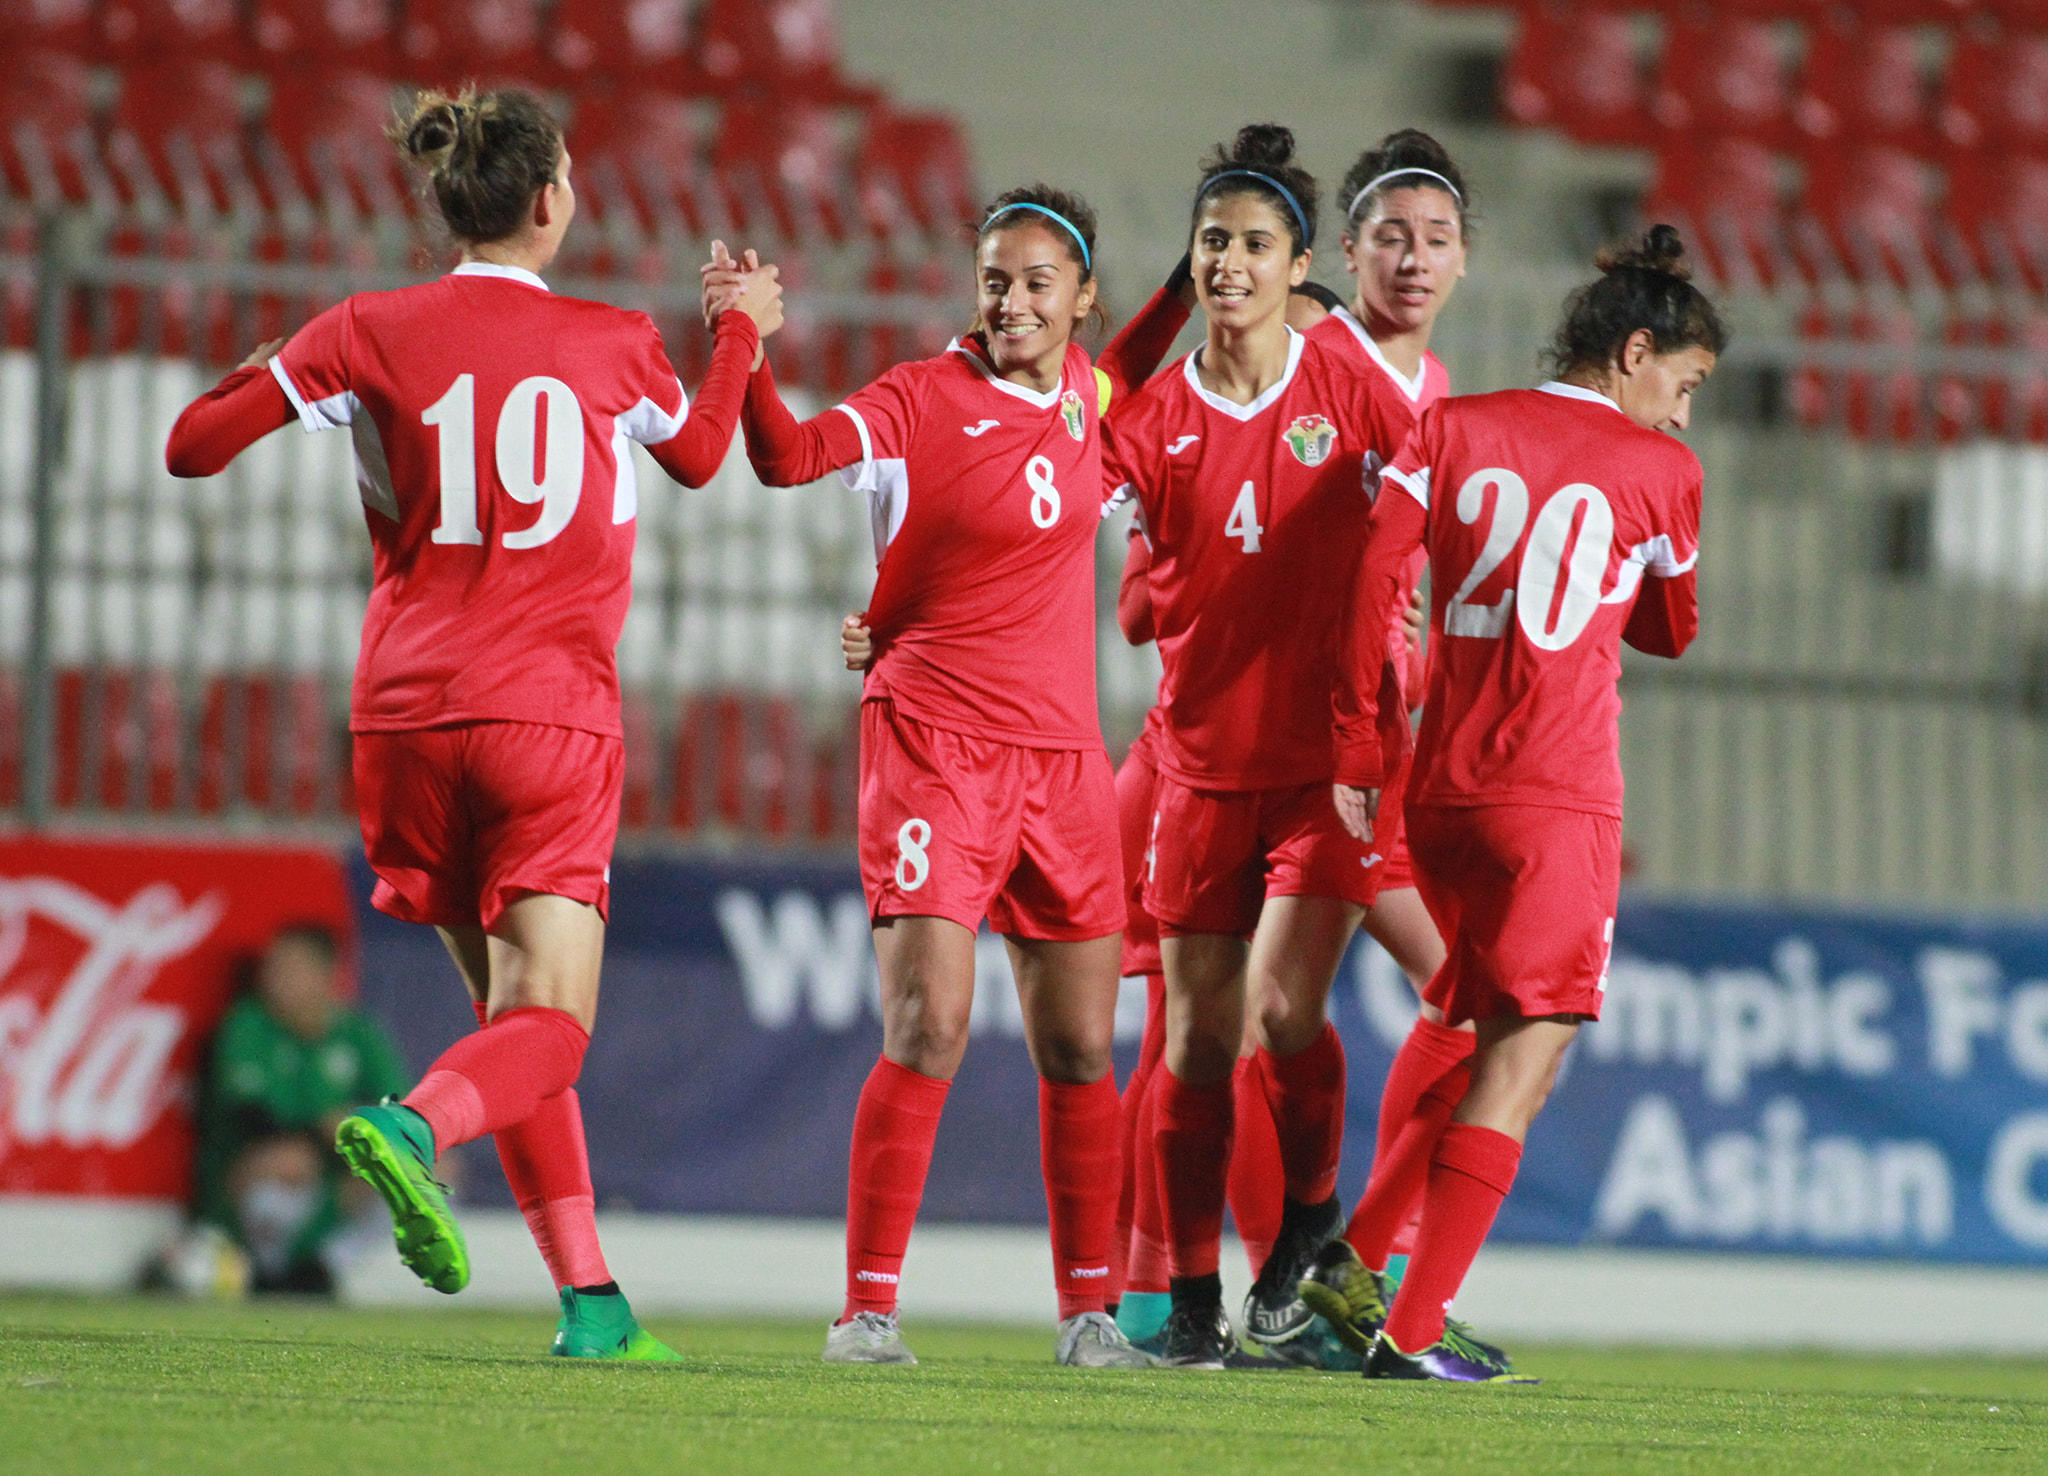 احتفال لاعبات المنتخب بأحد الأهداف. اللجنة الأولمبية الأردنية